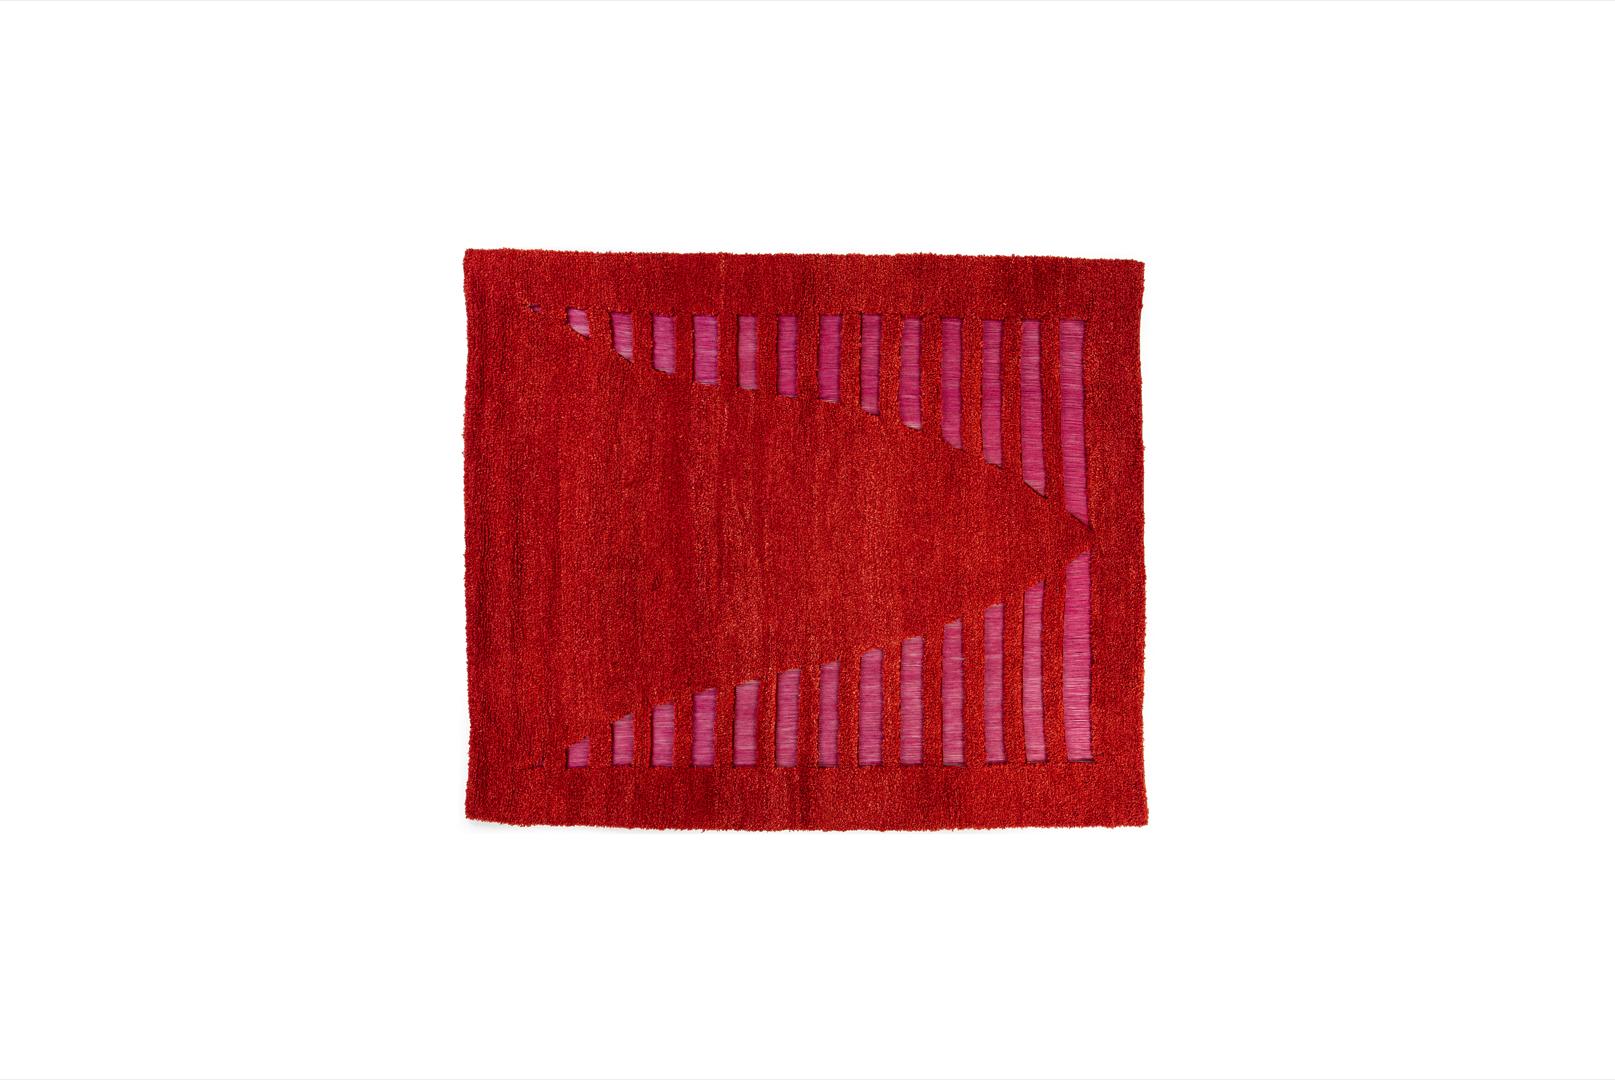 Gabbeh Gewebter, ausgestellter Teppich mit Kette von Taher Asad Bakhtiari
Abmessungen: B 230 x L 275 cm
MATERIALIEN: Wolle

Taher Asad-Bakhtiari (B.1982, Teheran) ist ein autodidaktischer Künstler, dessen Praxis sich auf Objekte, Textilien und